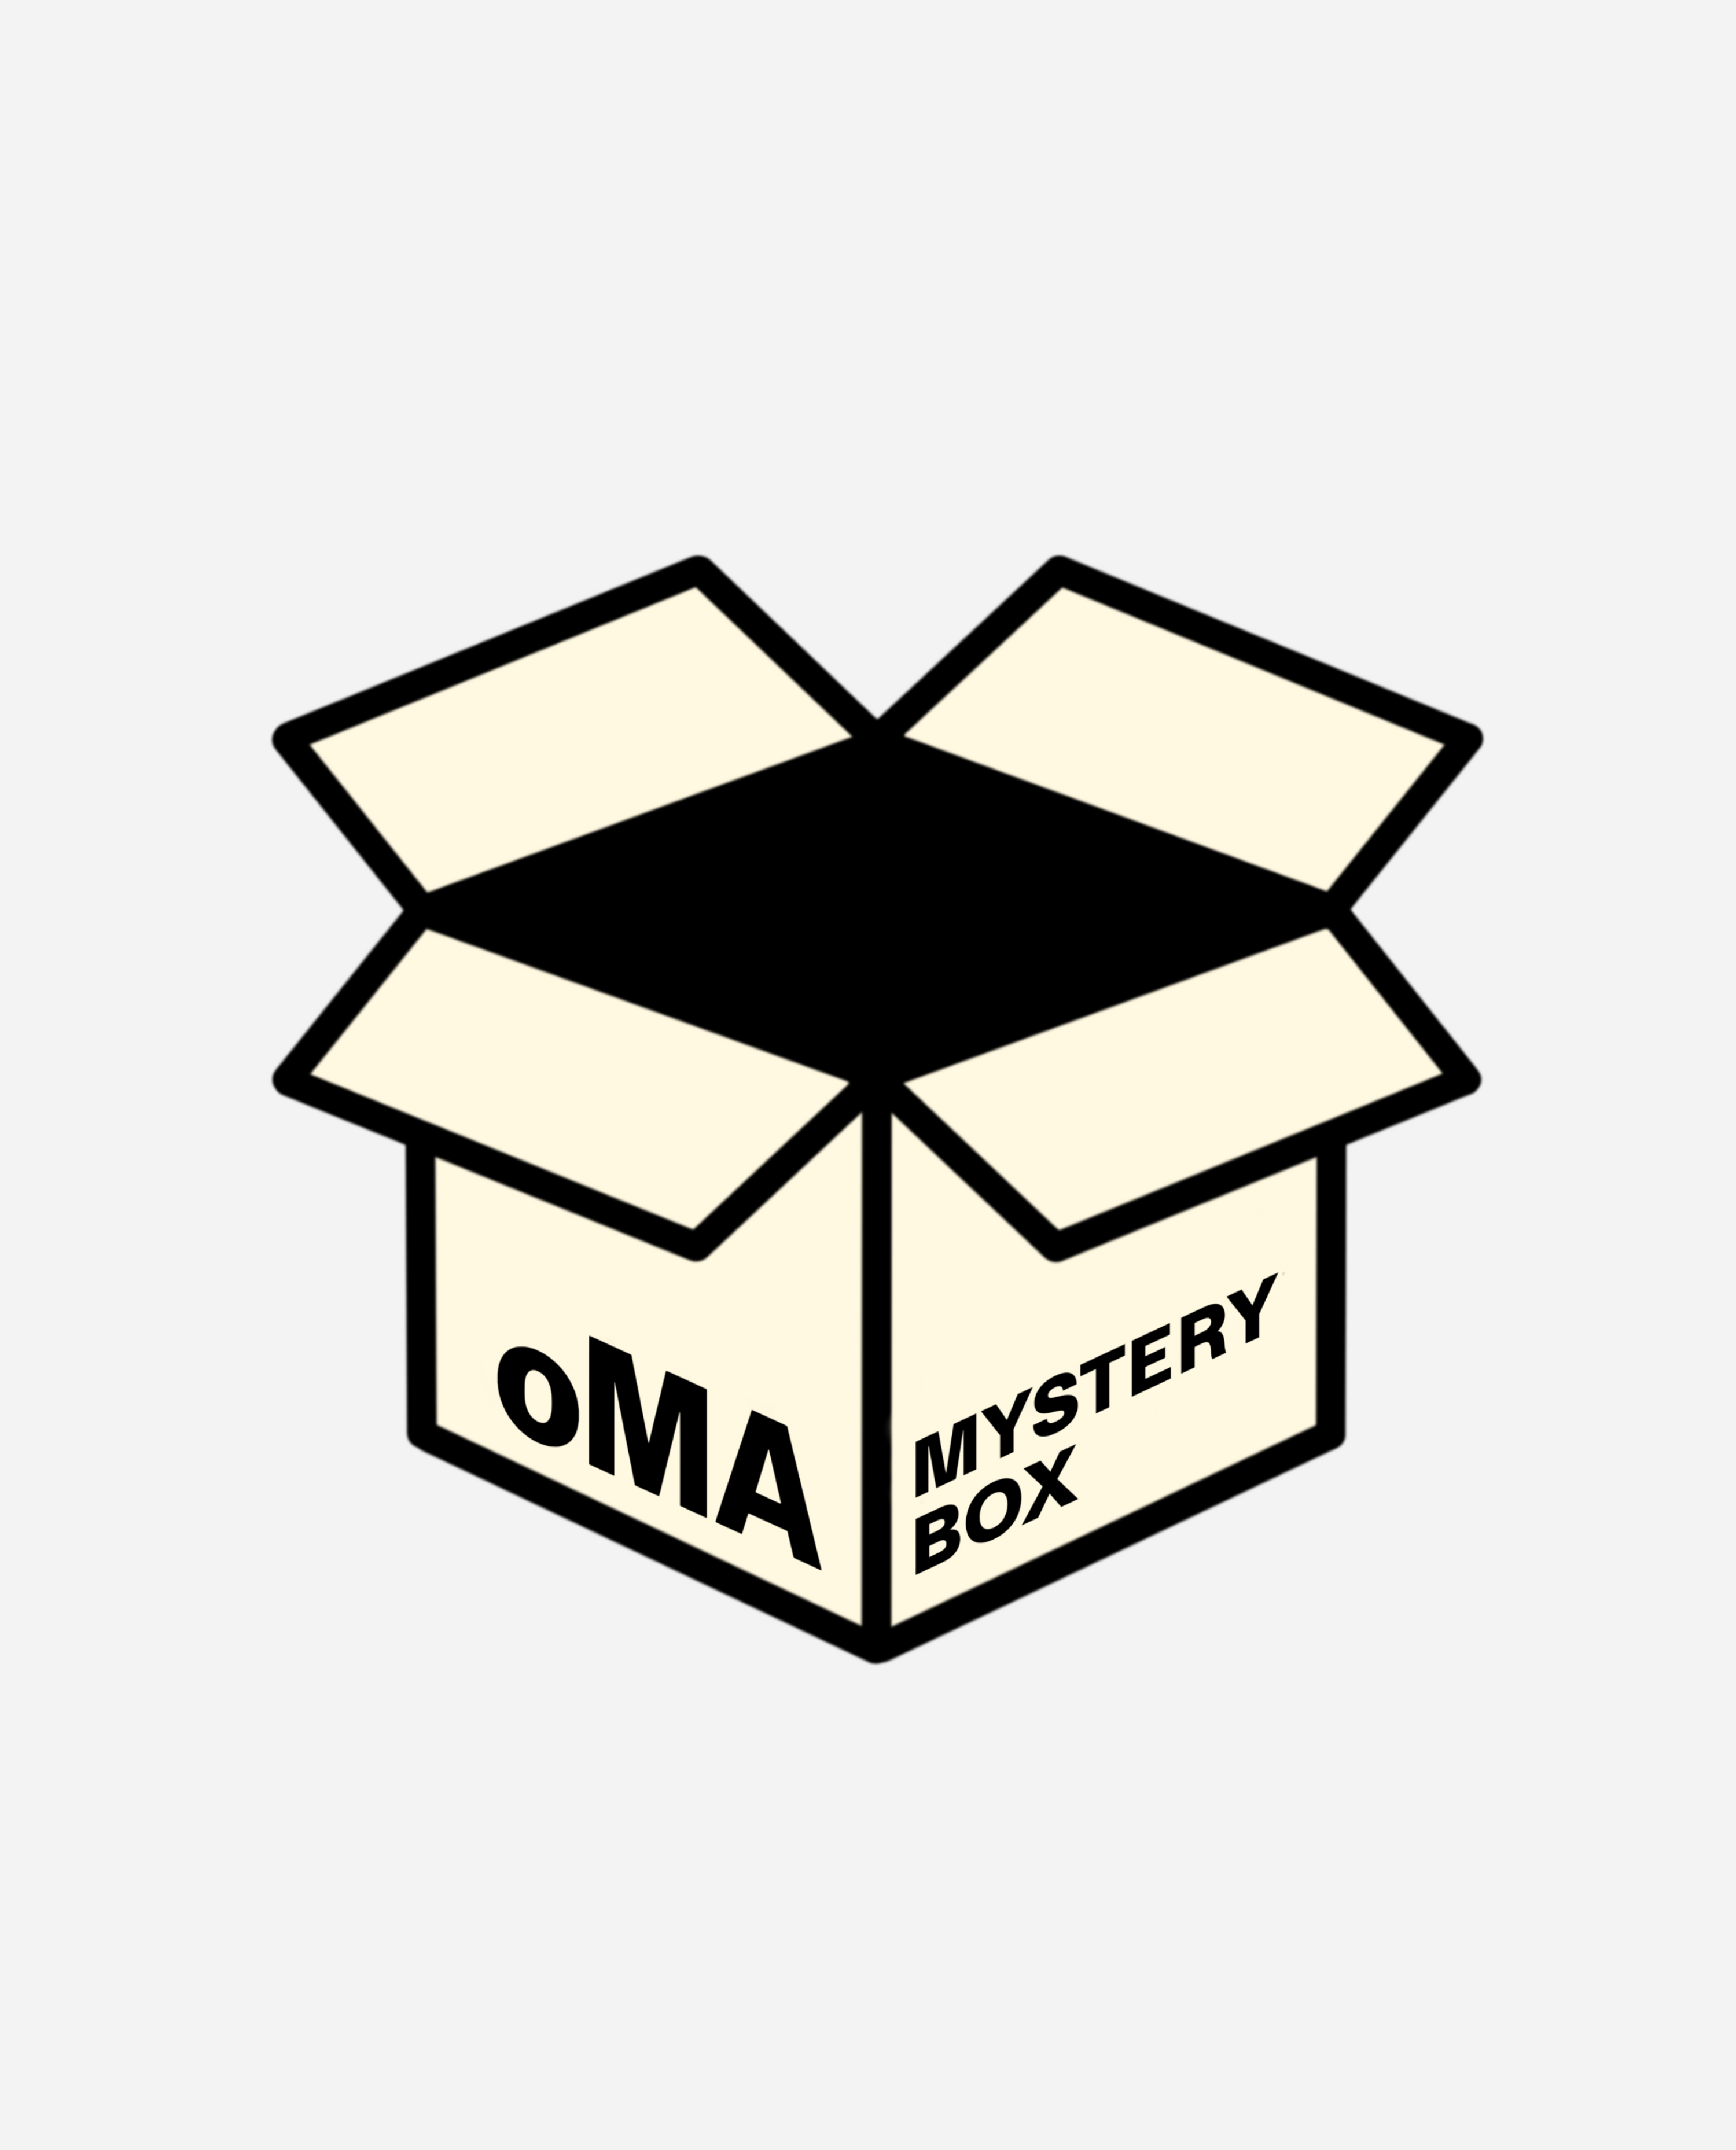 oMA MYSTERY BOX